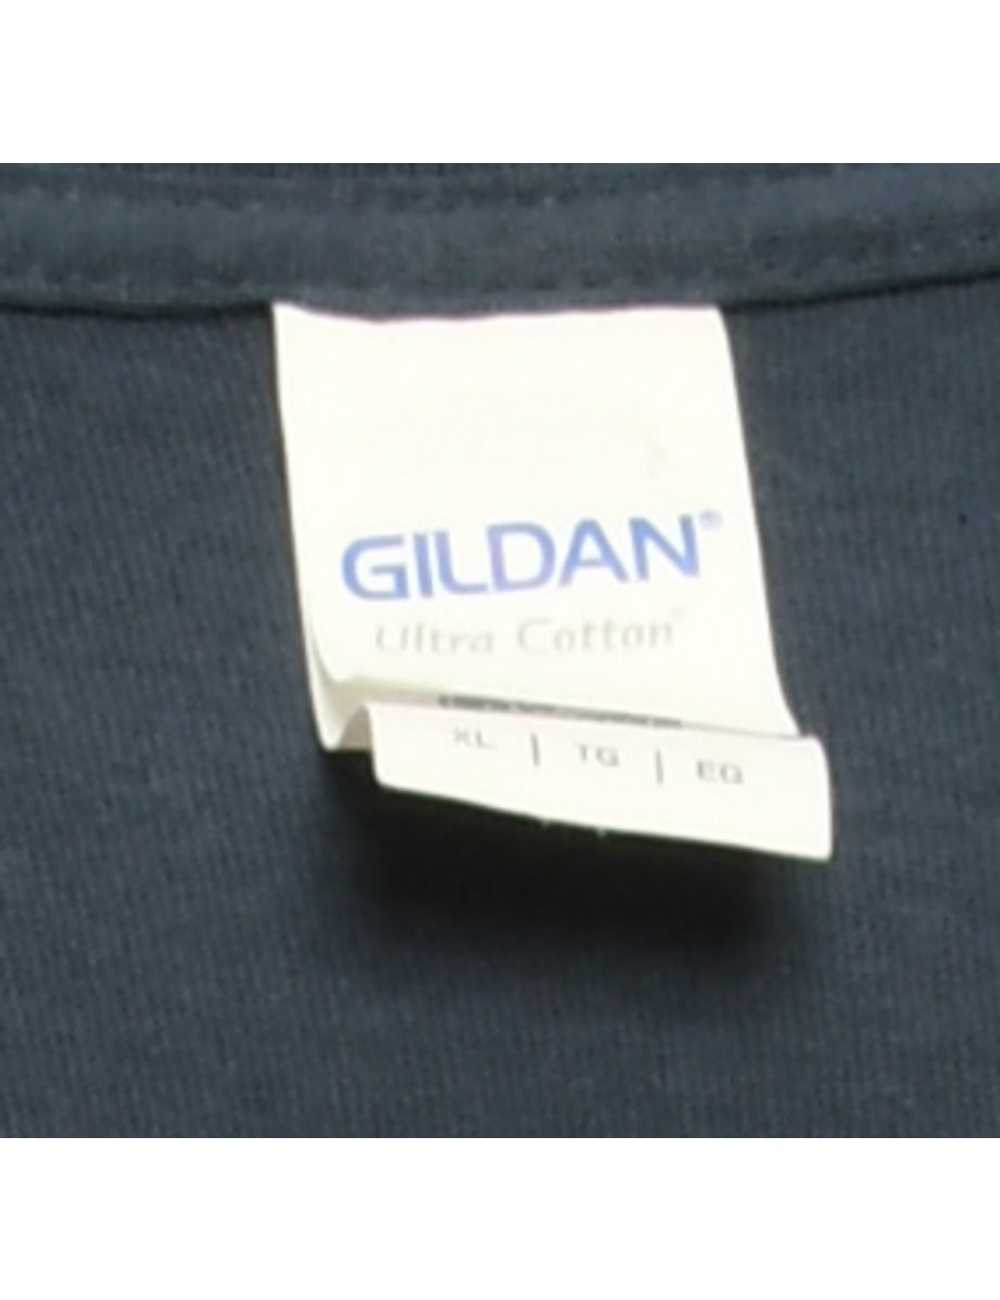 Gildan Printed T-shirt - M - image 4